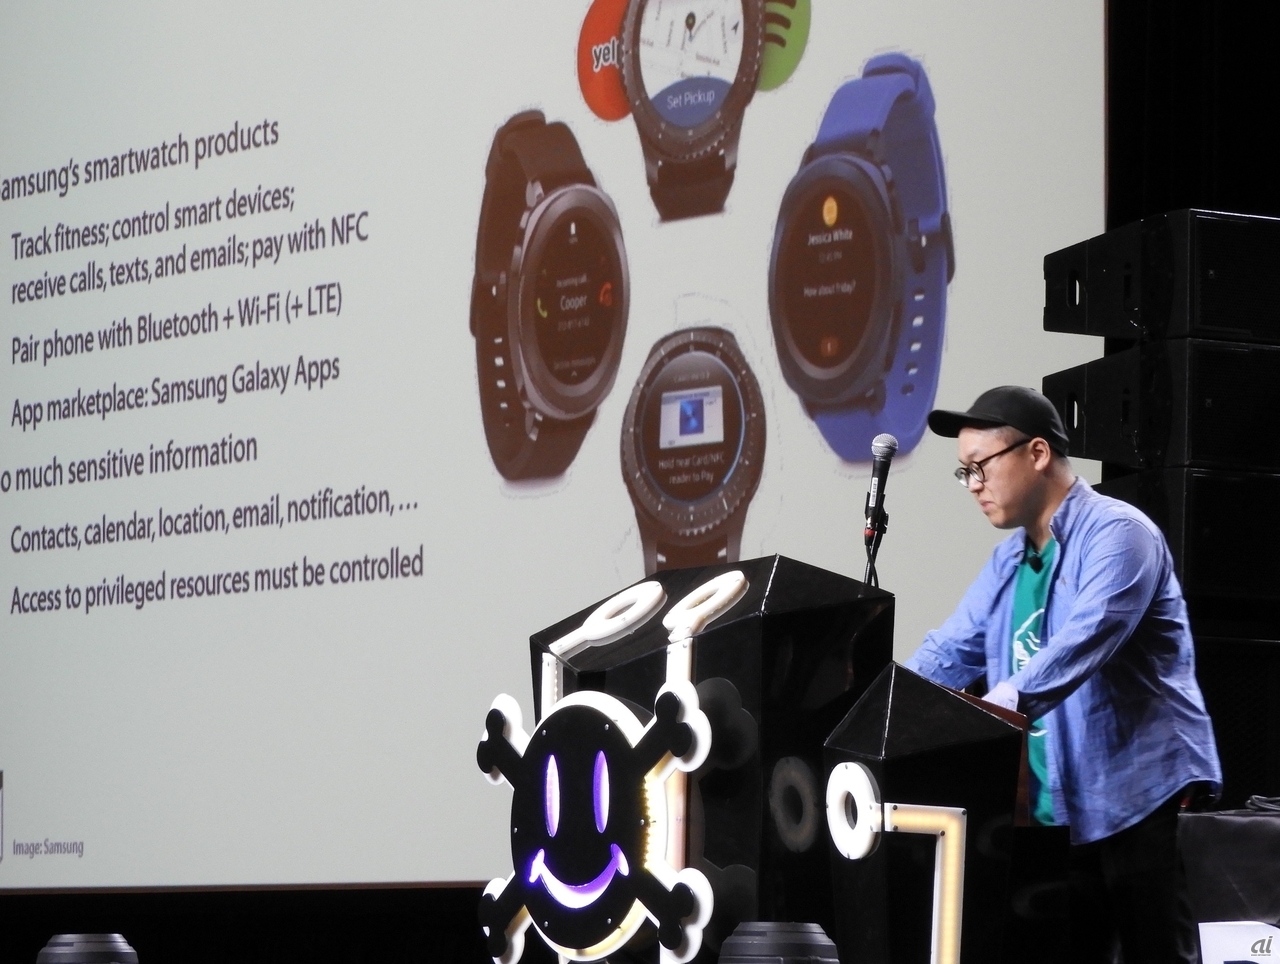 韓国 成均館大学の金東聖（Kim Dong-sung）氏は、サムスン電子のスマートウォッチ「Gear Smartwatch」の脆弱性を解説。アプリケーションとシステム間の通信チャネルを使ってハッキングしたり、Tizen OSのアクセス制御を行って情報をリークさせたりする実証実験を披露した。